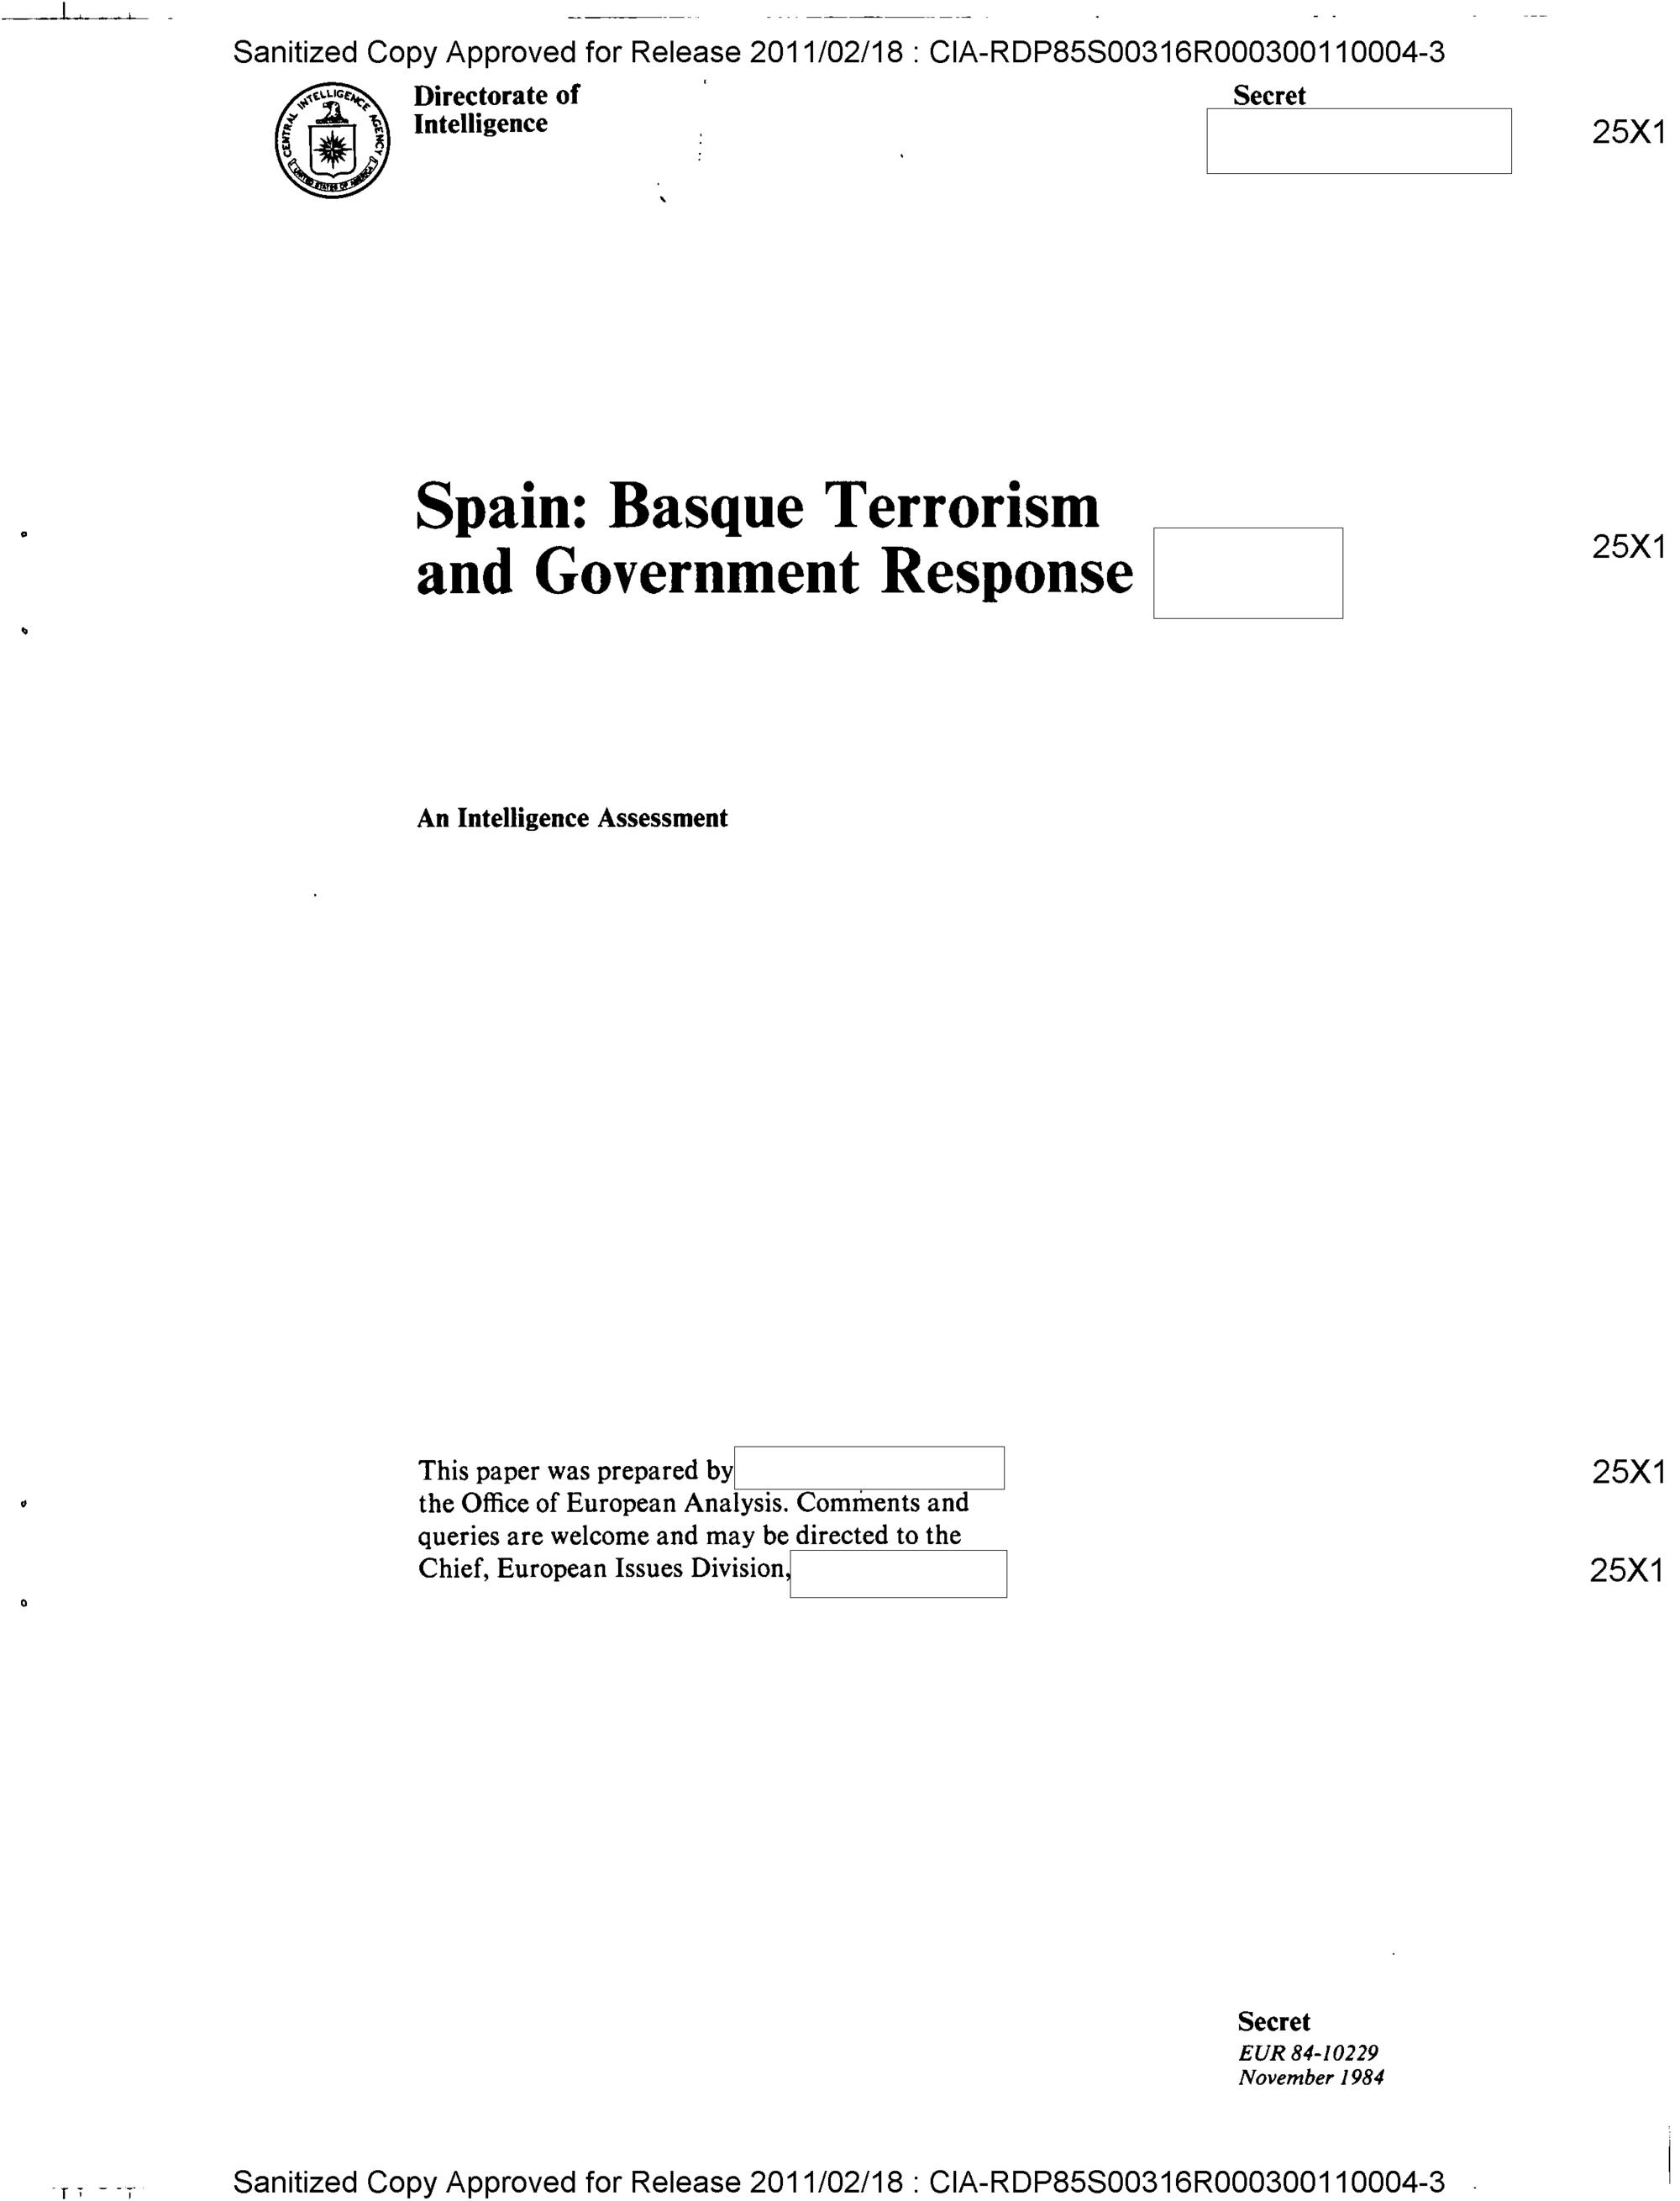 Portada del informe ‘España: terrorismo vasco y respuesta del Gobierno’ que la Oficina de Análisis Europea de la CIA redactó en 1984